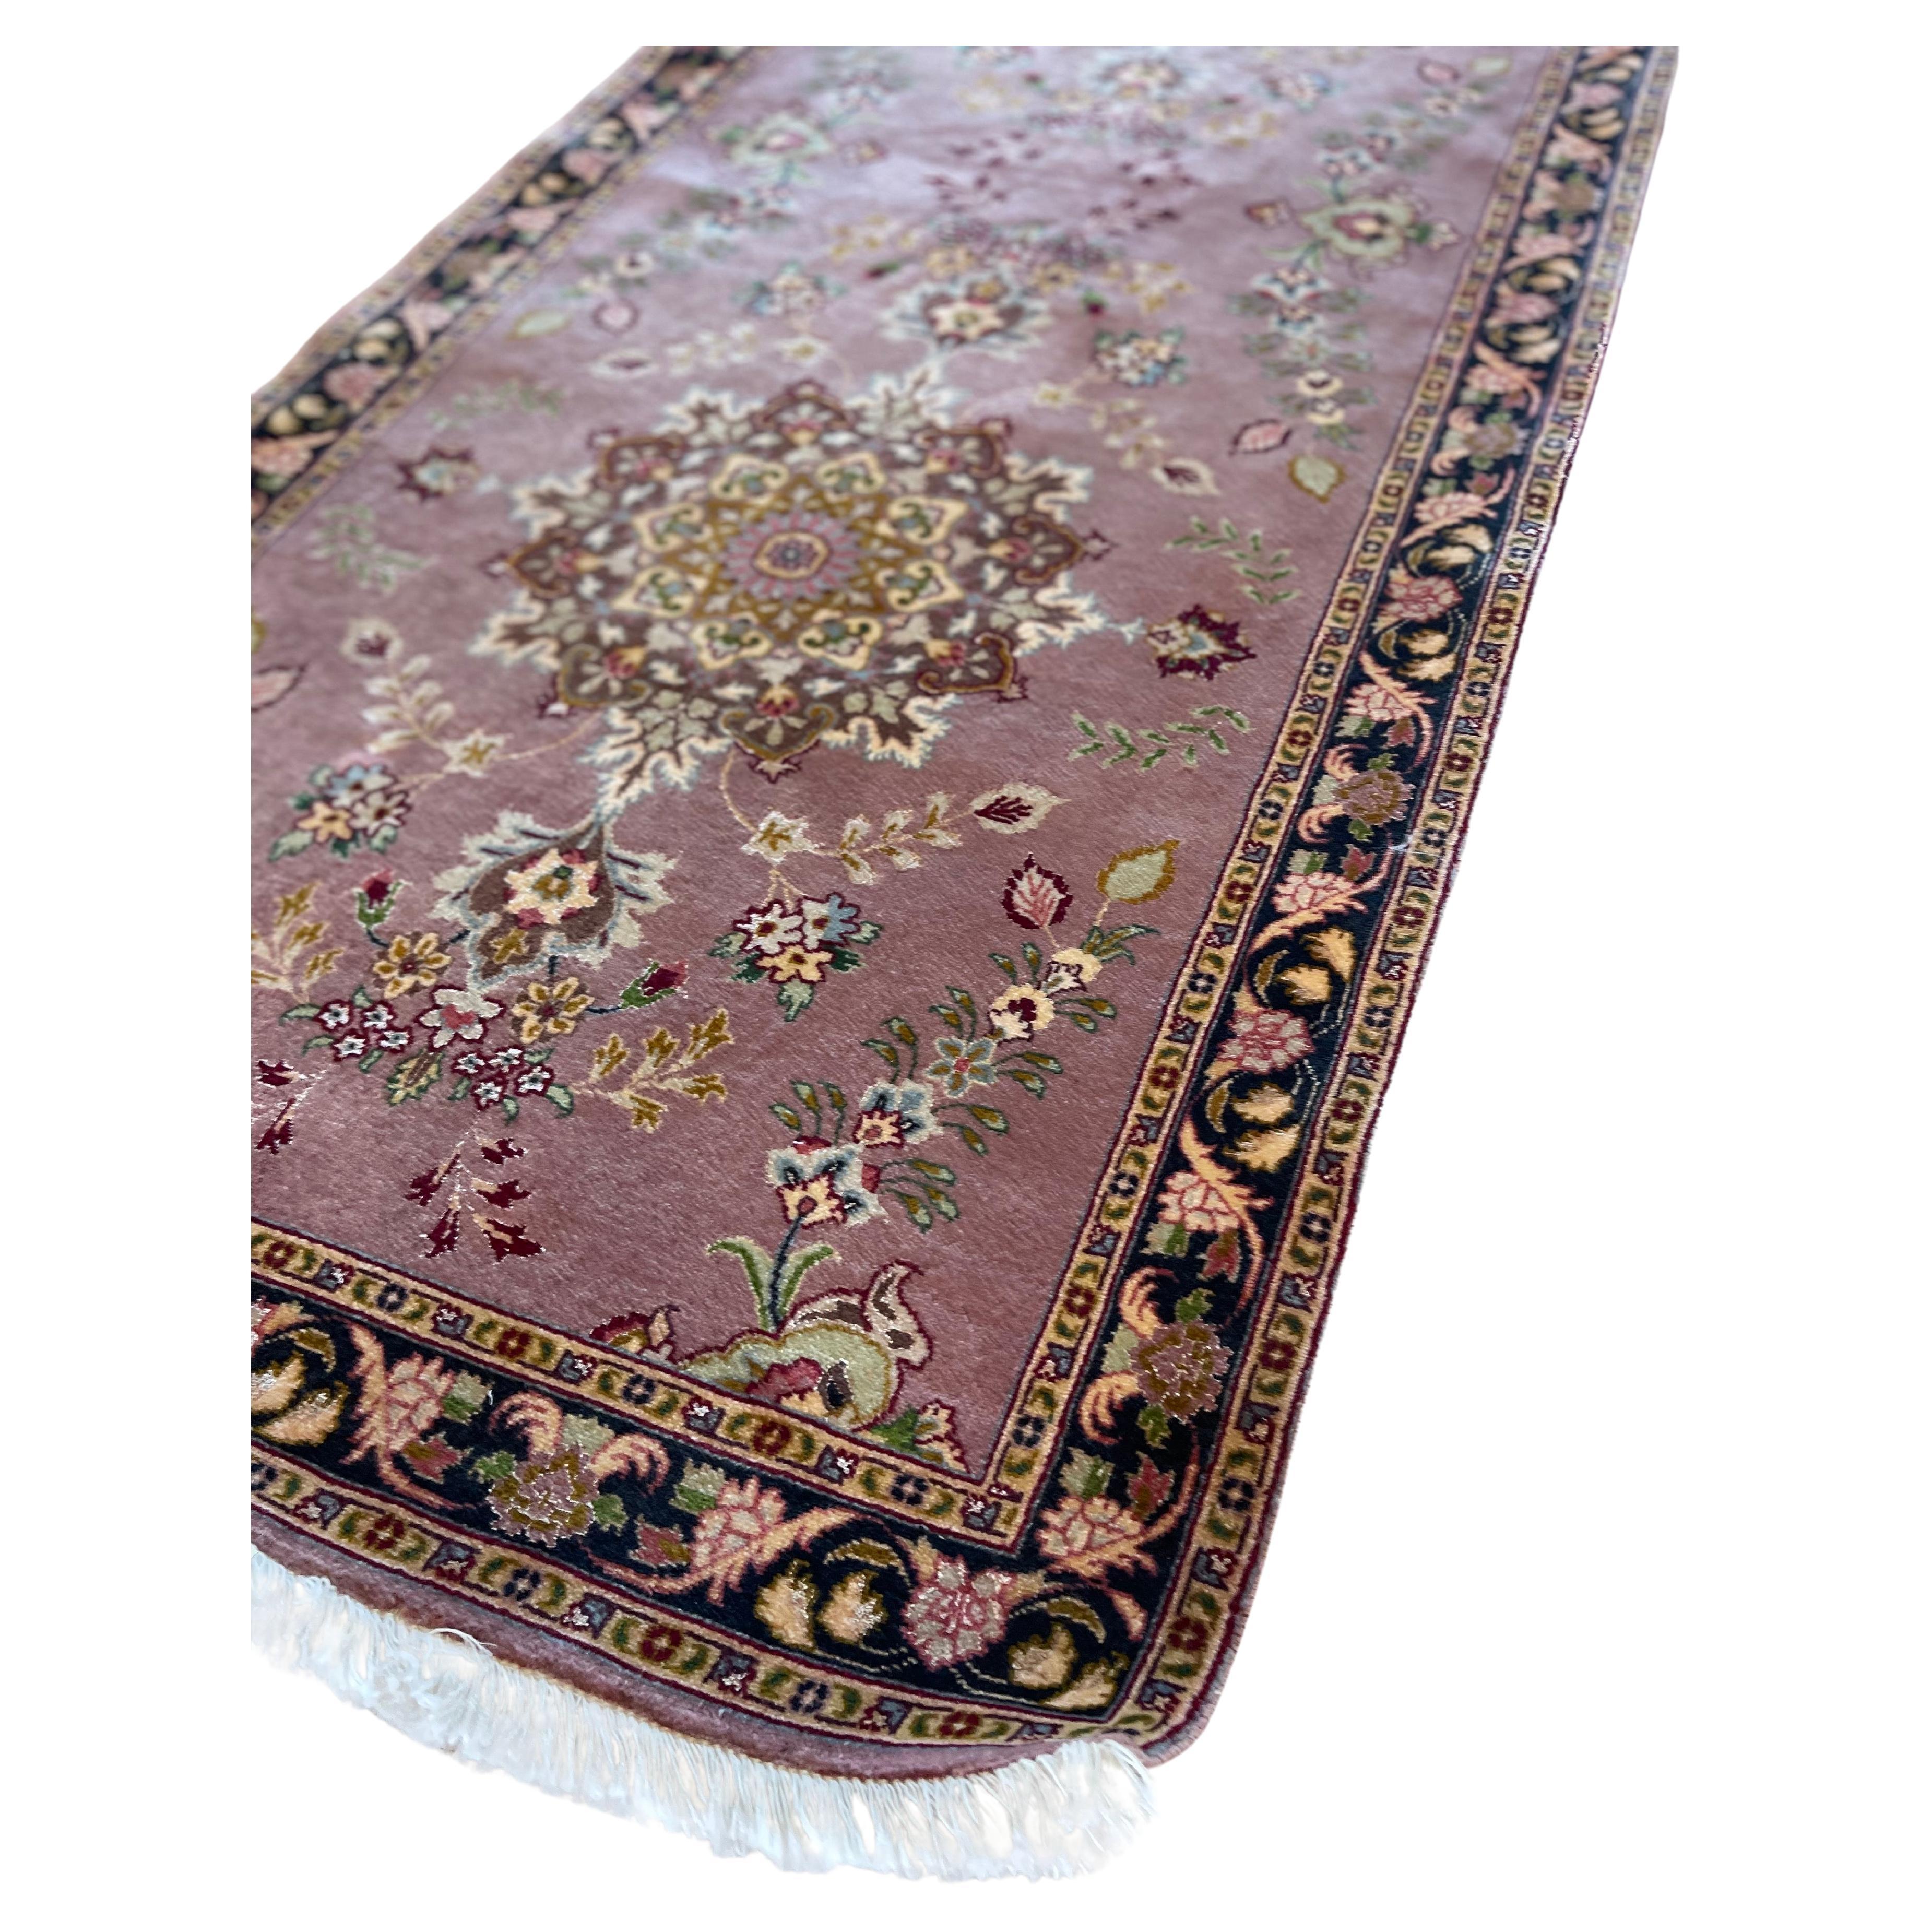 Wir präsentieren einen atemberaubenden, handgeknüpften persischen Täbriz-Läufer, der hochwertige Handwerkskunst und zeitlose Schönheit verkörpert. Mit seinem bezaubernden floralen Medaillonmuster besticht dieser Teppich durch seine einzigartige